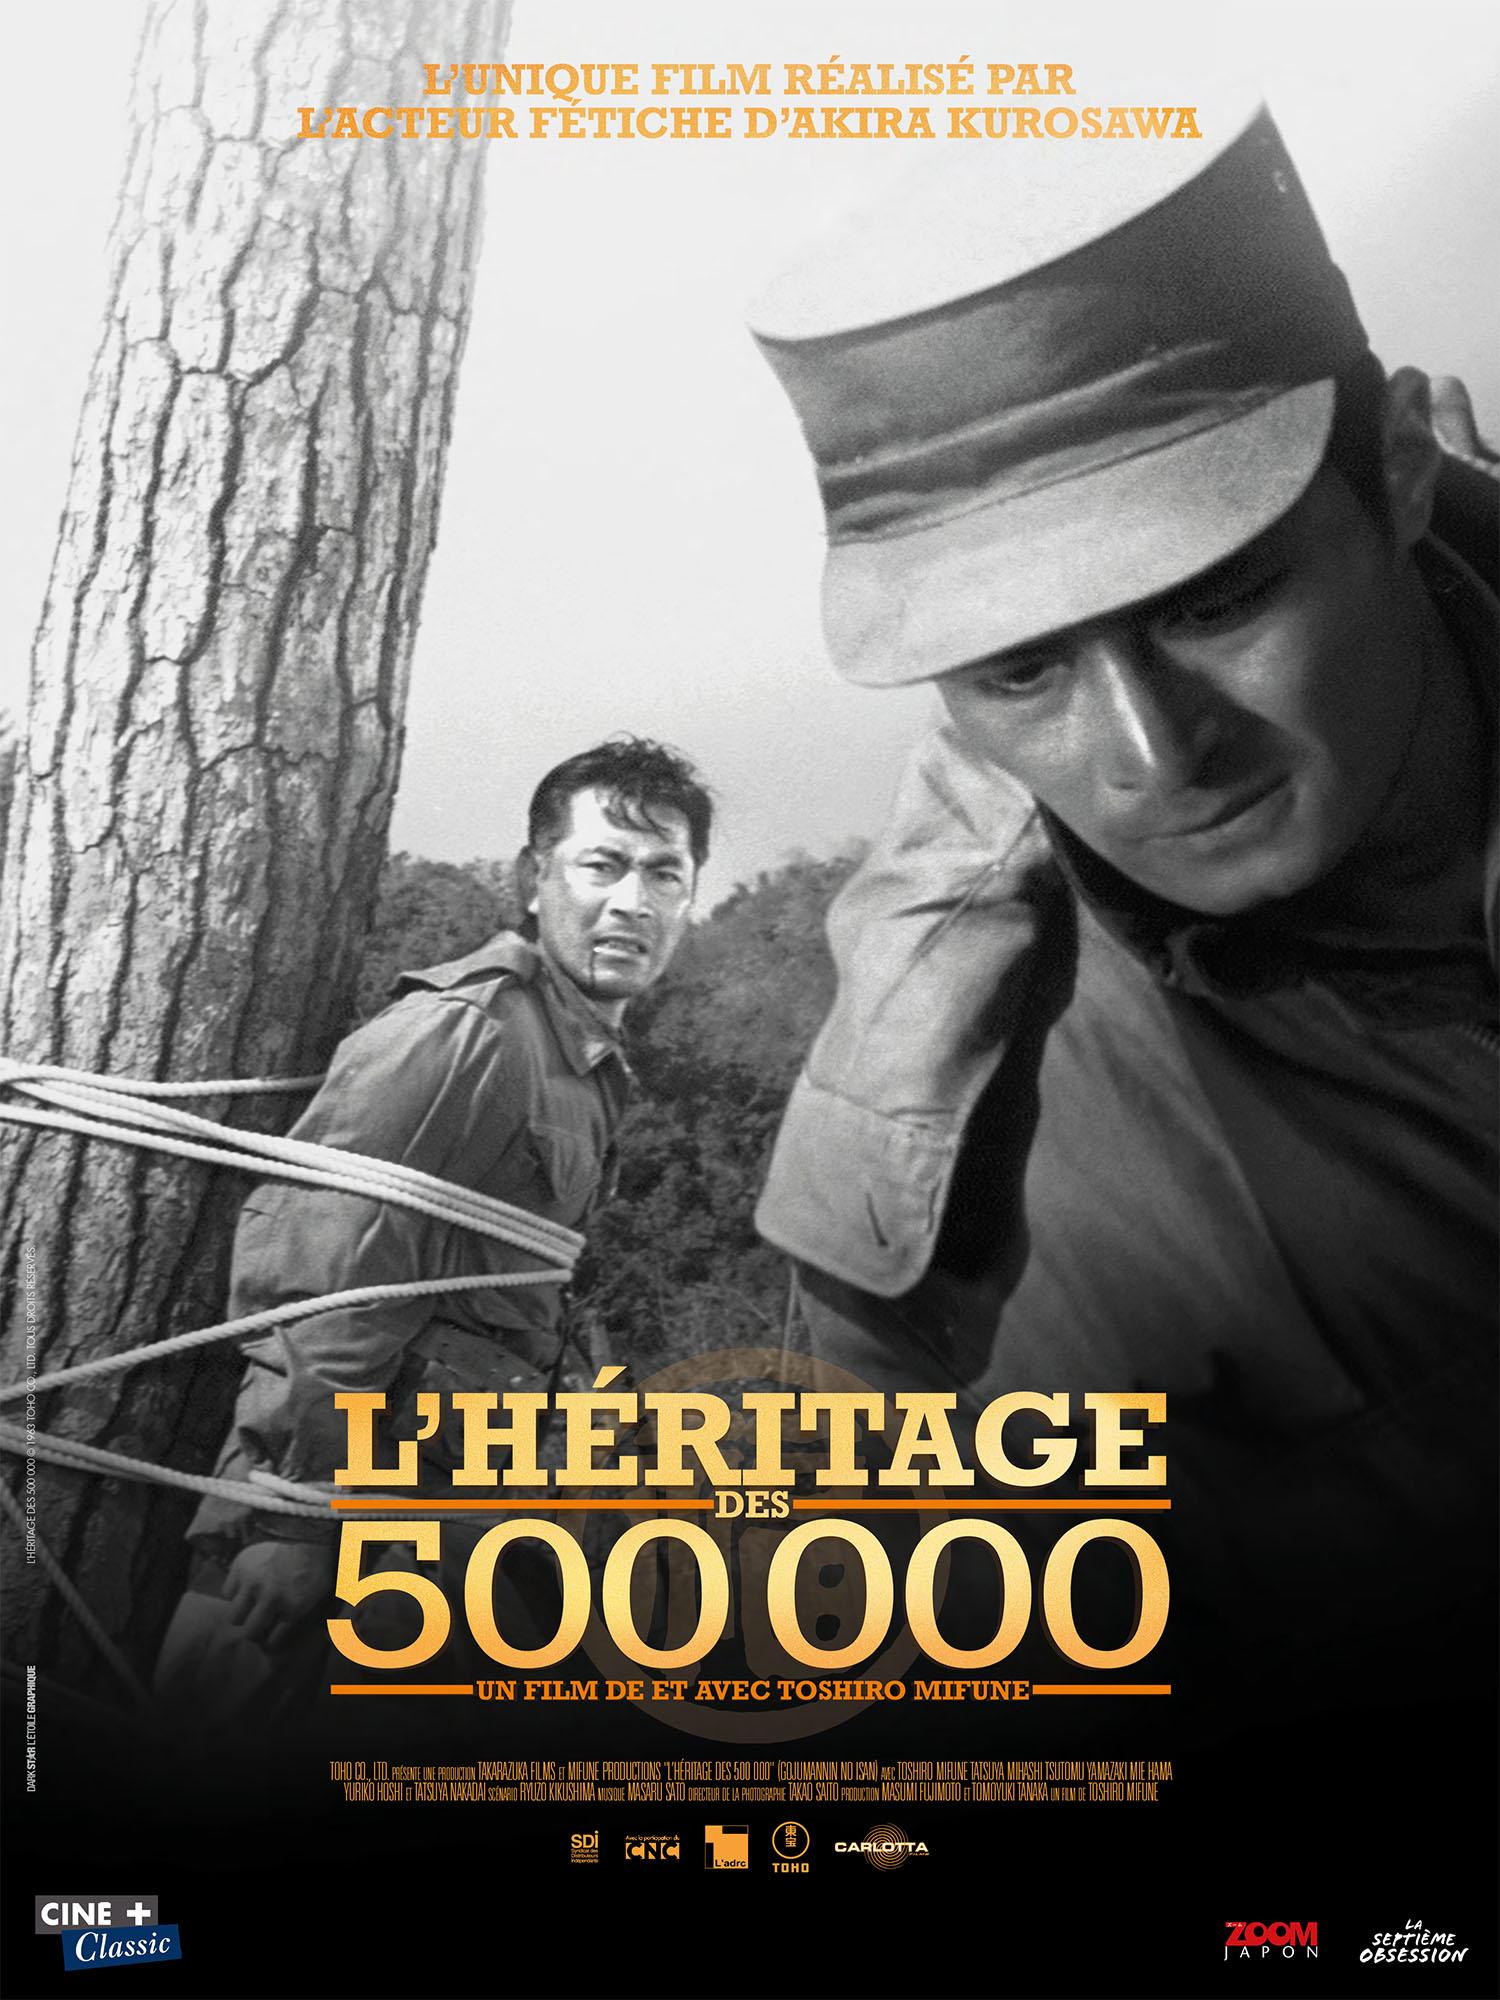 L’héritage des 500000 de et avec Toshiro Mifune sort en salles avant la rétrospective Kurosawa / Mifune.